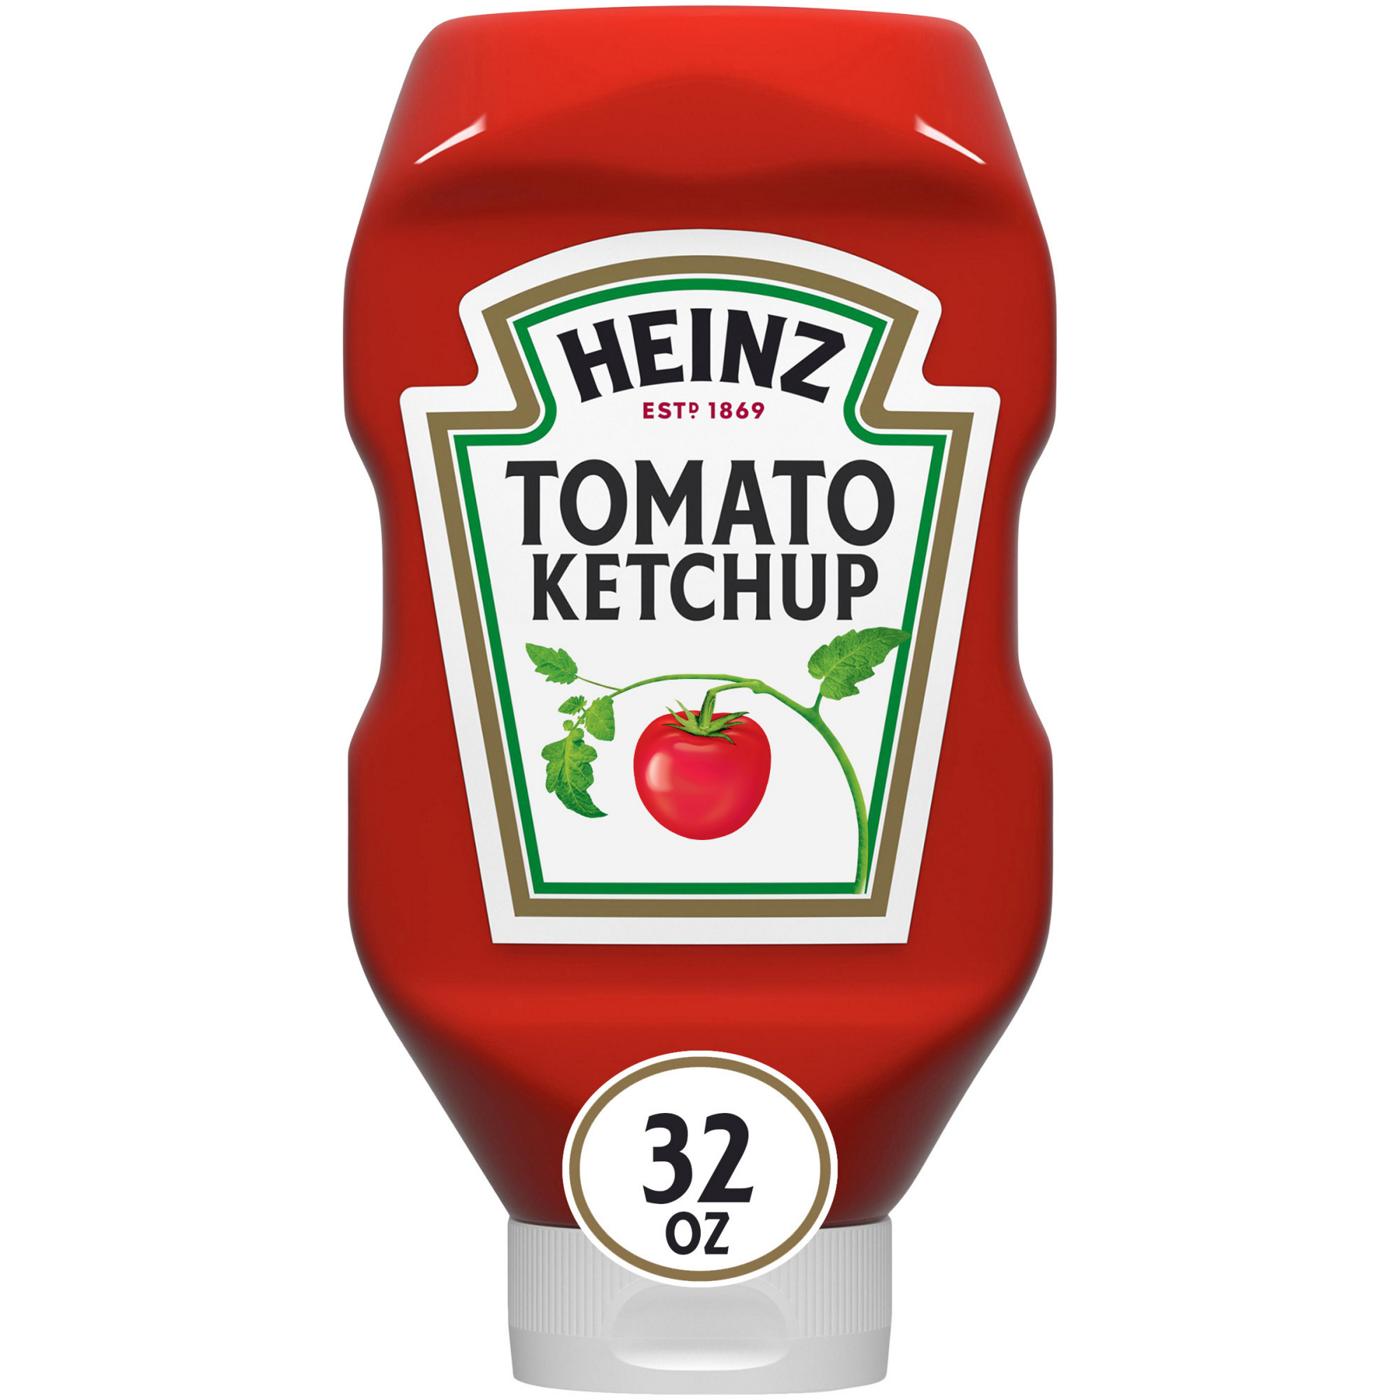 Heinz Tomato Ketchup; image 1 of 7